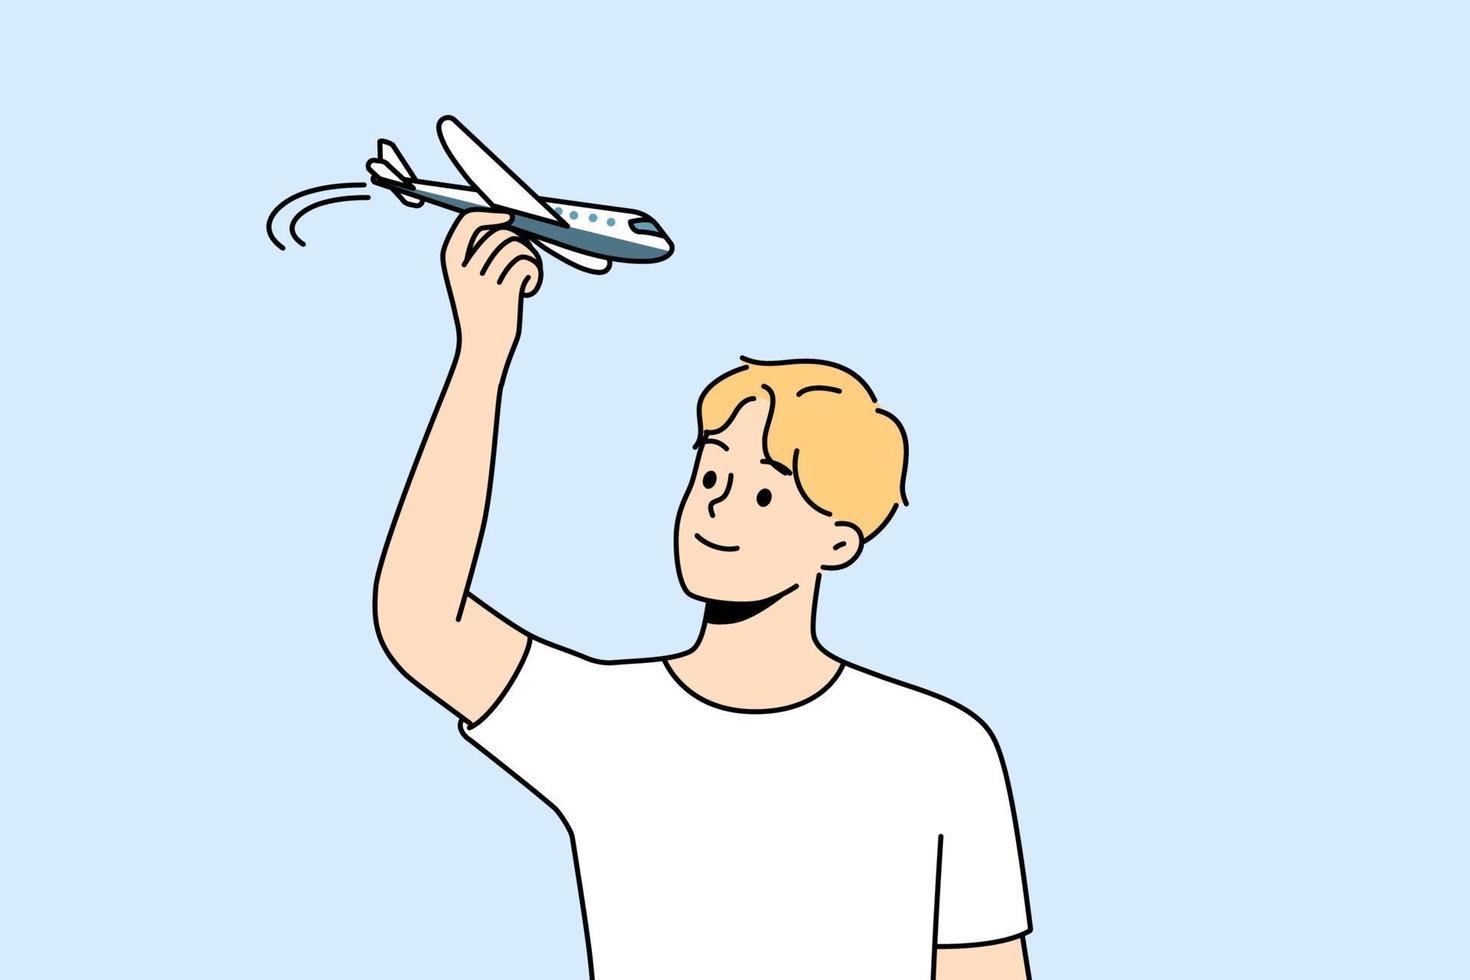 jovem se diverte brincando com modelo de avião. cara sorridente voando com miniatura de avião. aviação e hobby. ilustração vetorial. vetor